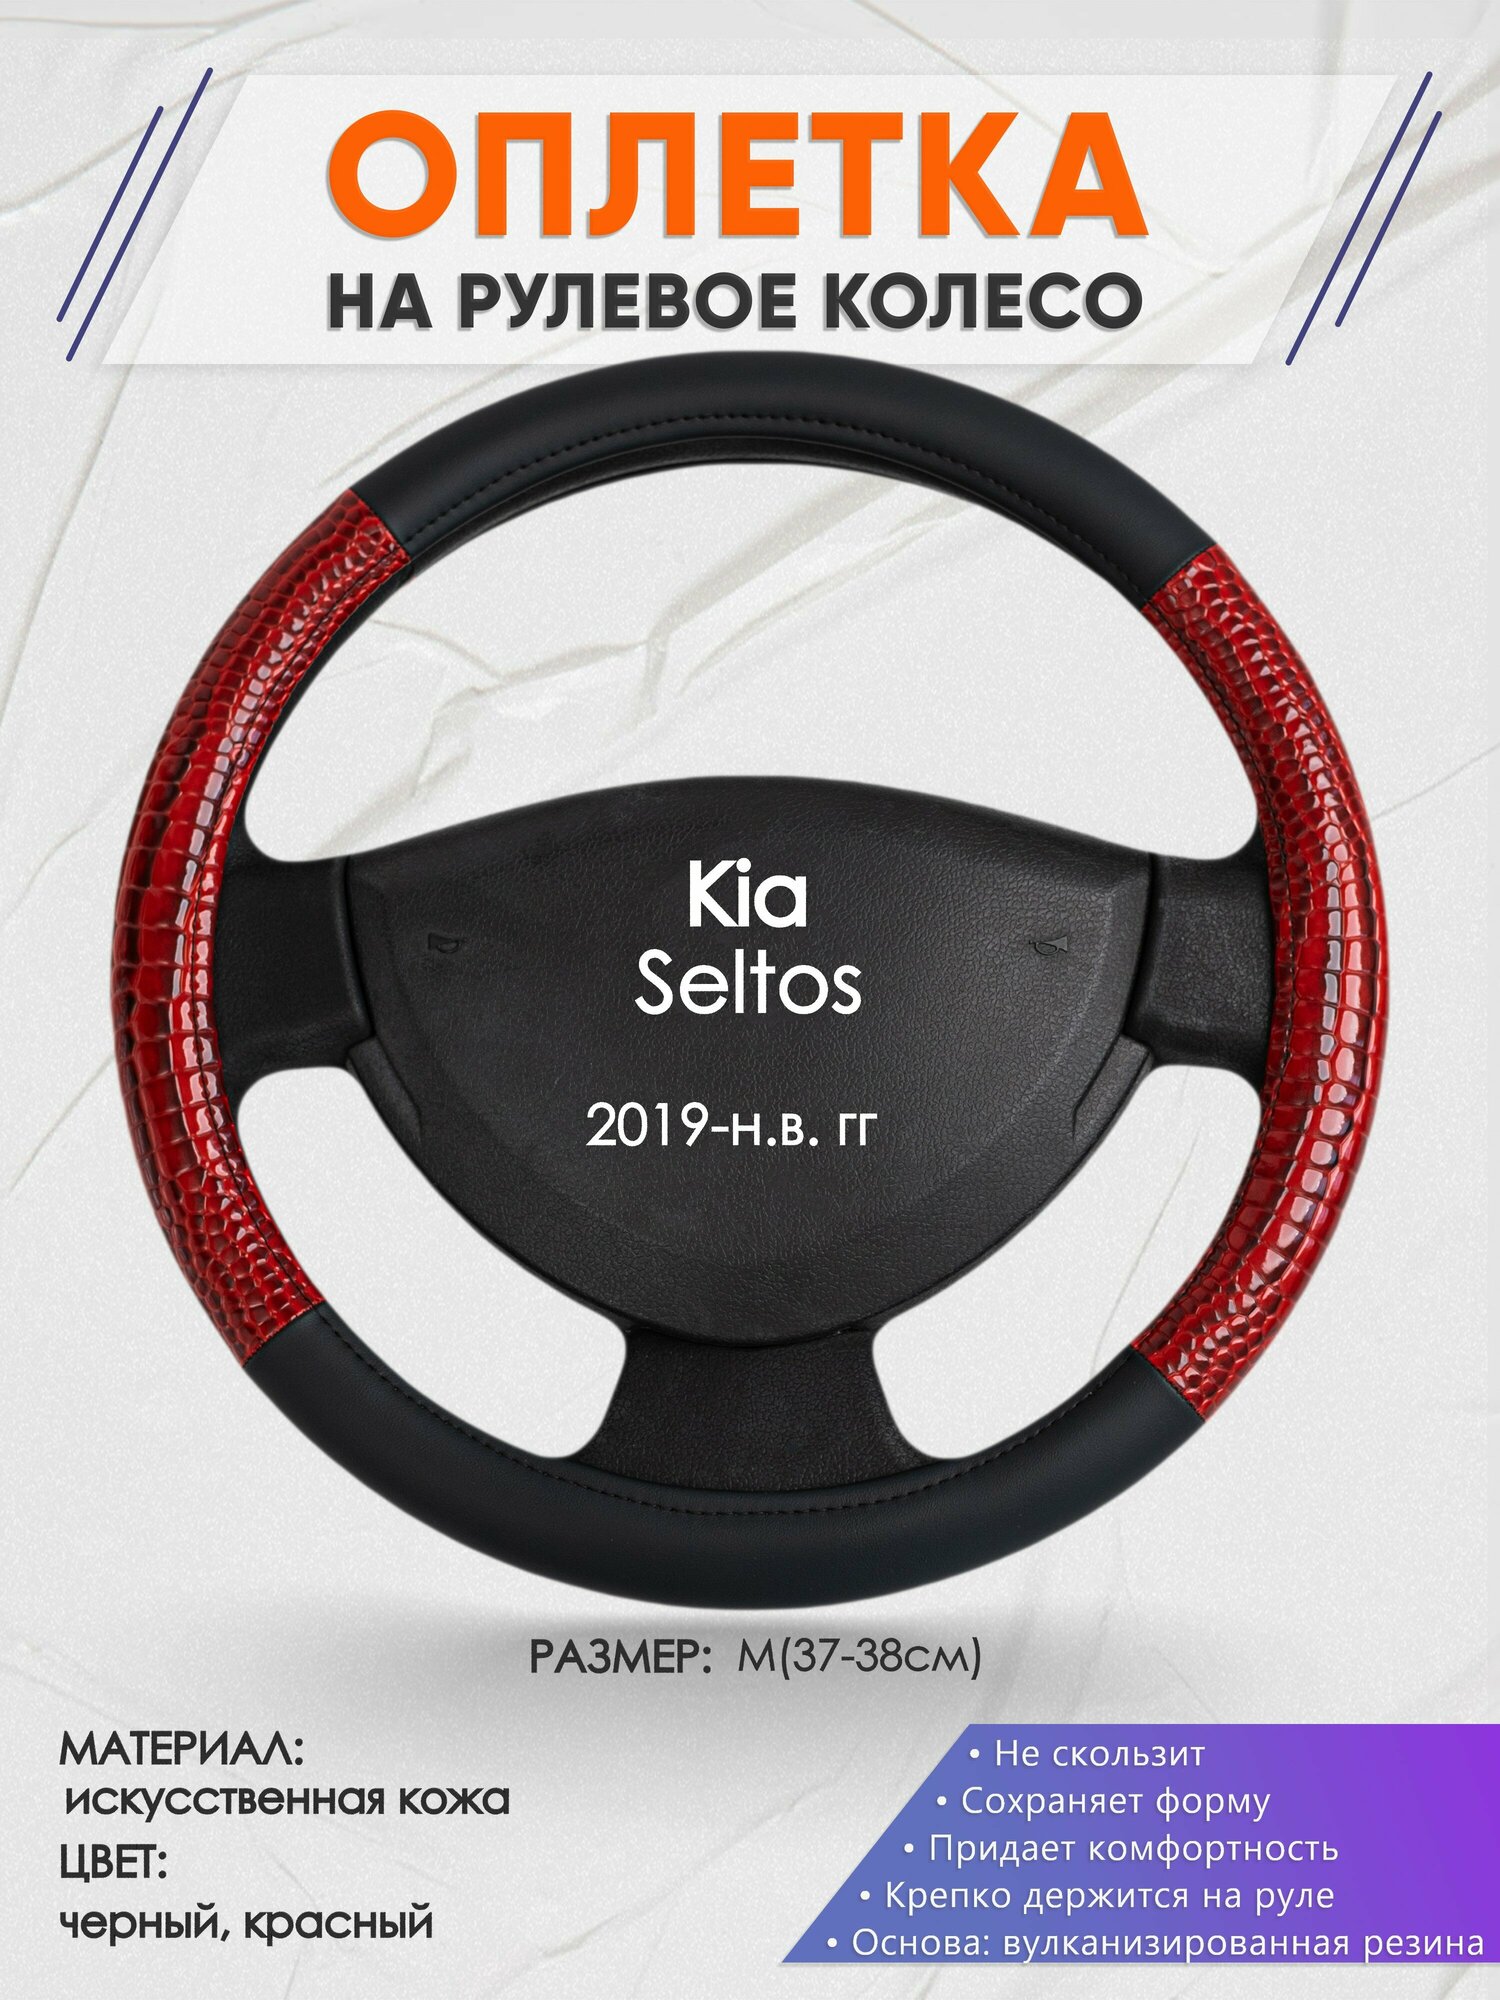 Оплетка на руль для Kia Seltos (Киа Селтос) 2019-н. в M(37-38см) Искусственная кожа 69